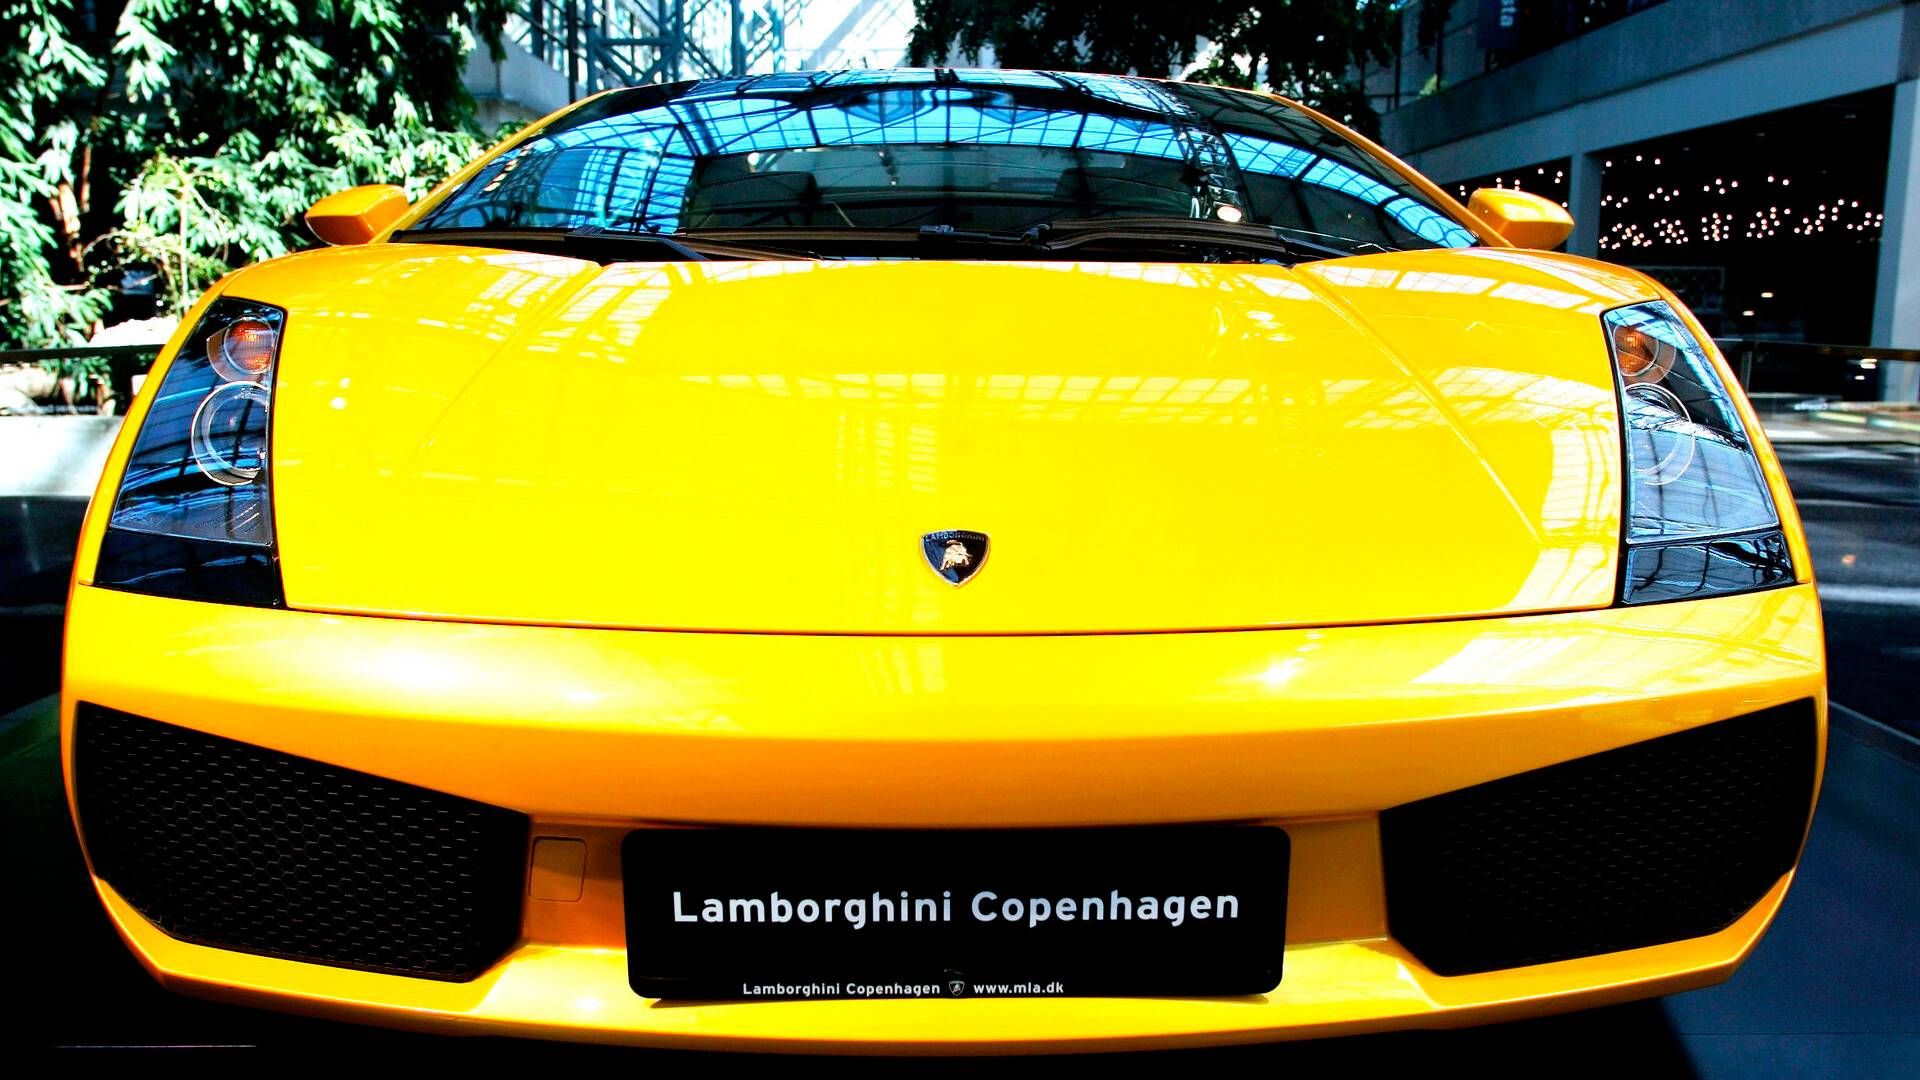 Semler Premium er Semler gruppens division for luksusbiler, der bl.a. forhandler Lamborghini. | Foto: Thomas Borberg/Politiken/Ritzau Scanpix